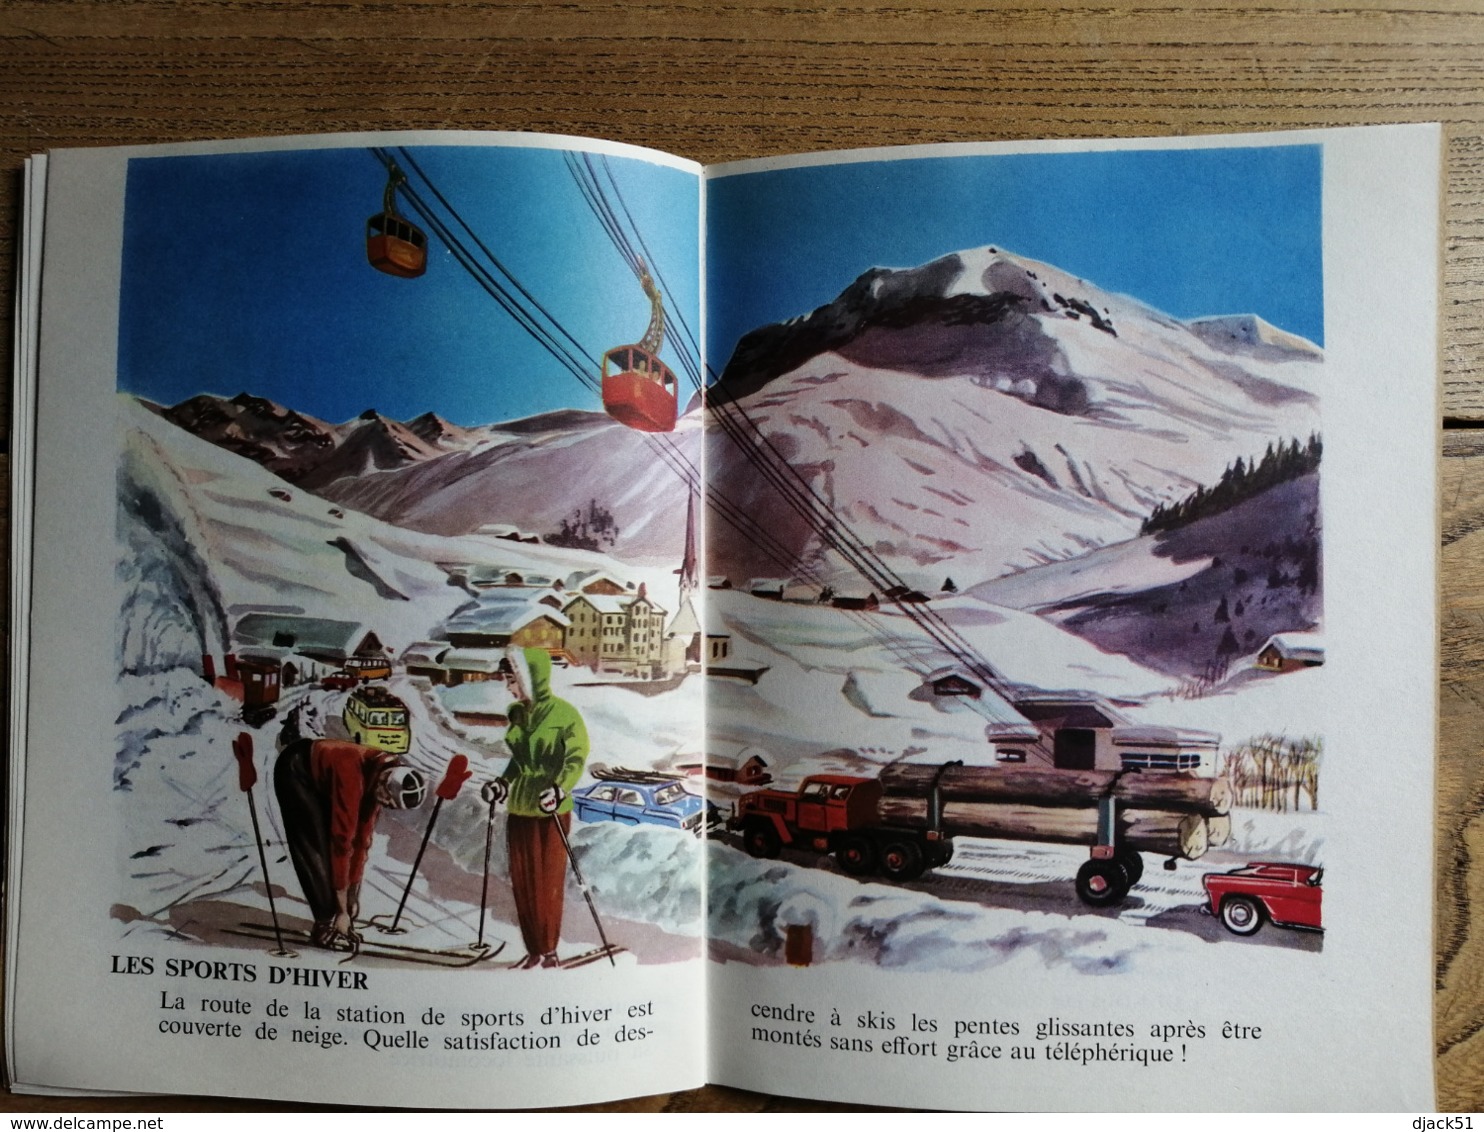 BON VOYAGE / EDITIONS BIAS PARIS / 1963 / Voitures, Avions, Motos, Camions, 24 H du Mans, Camions, Bateaux, Trains, ...